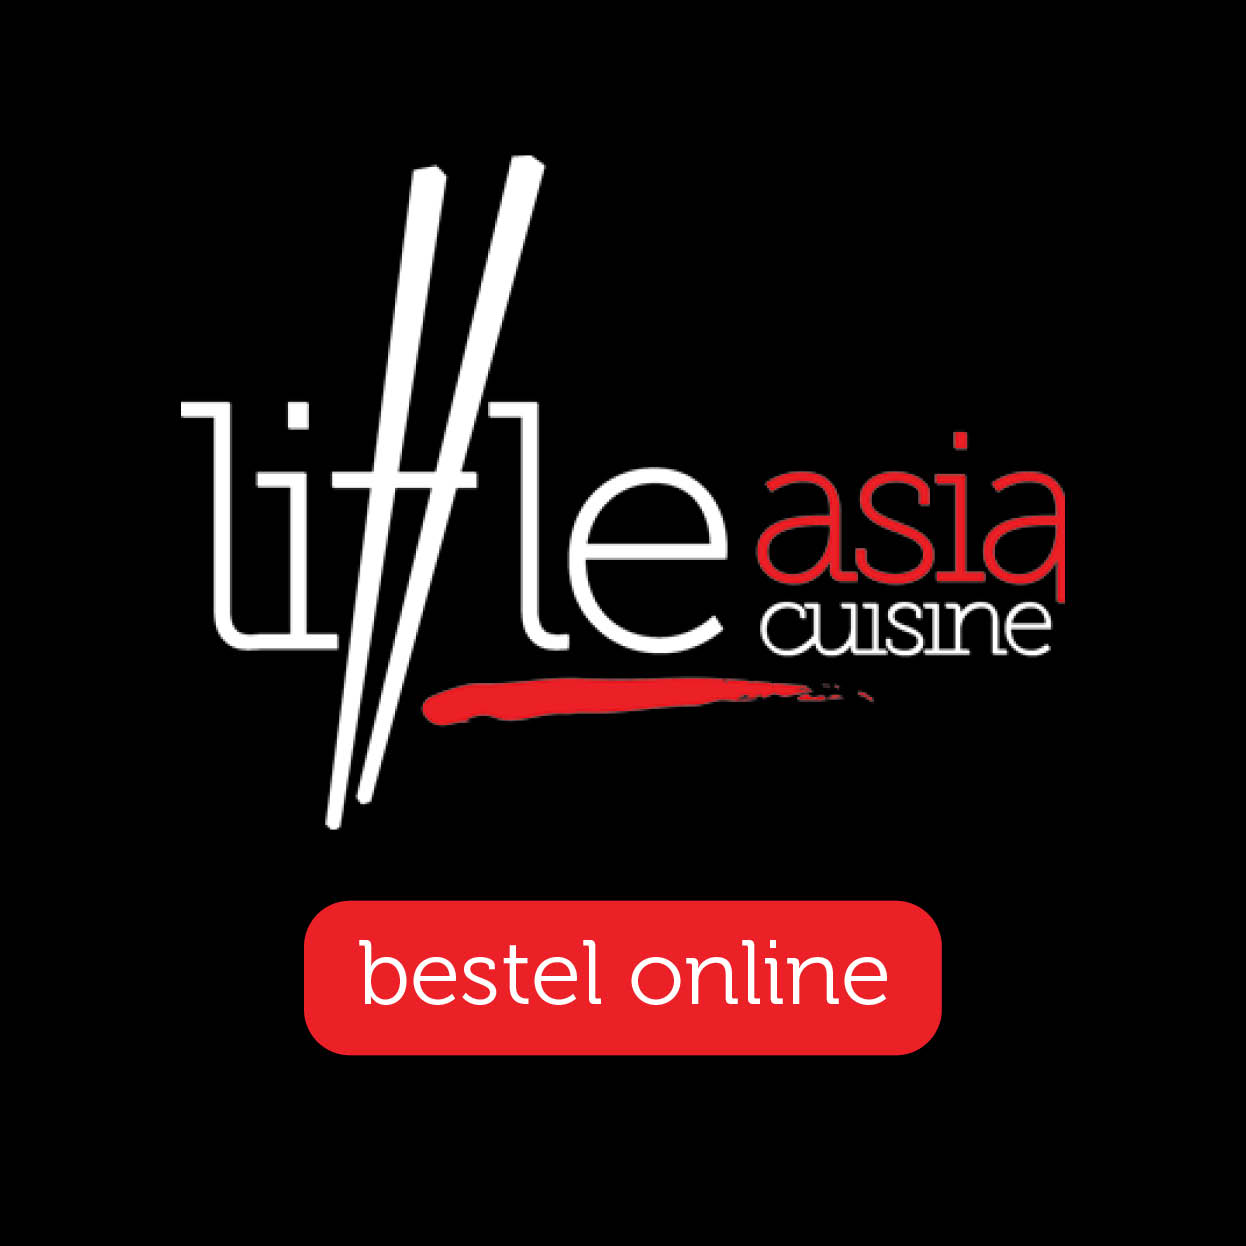 04175 - Little Asia Cuisine